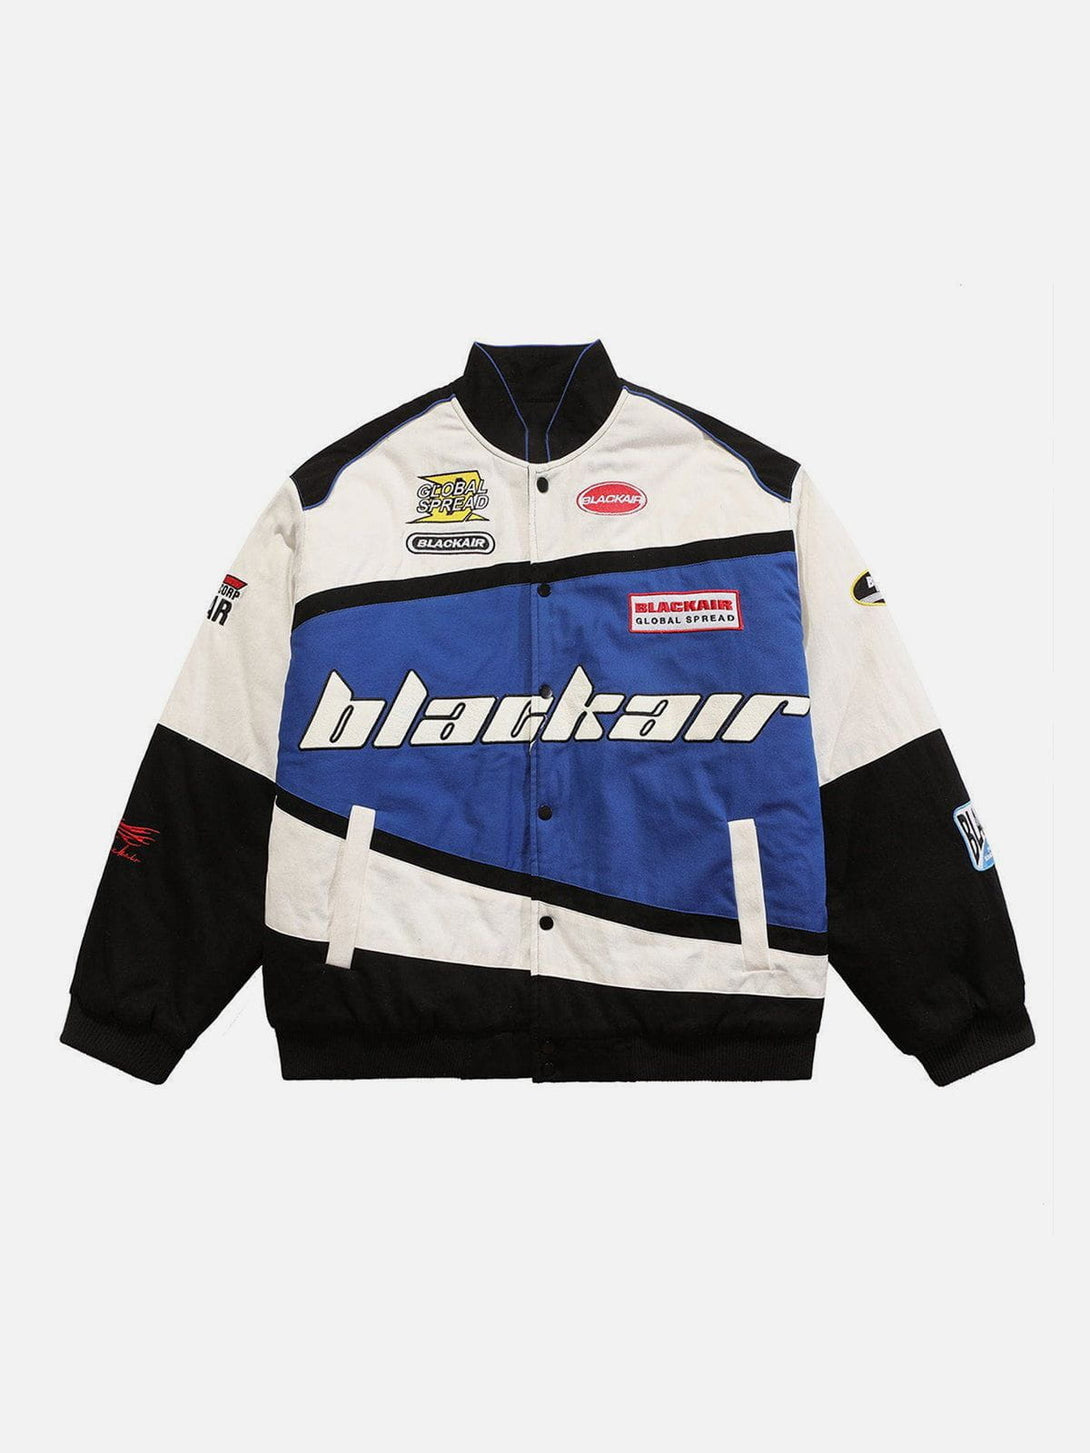 AlanBalen® - BLACKAIR Motosports Jacket AlanBalen